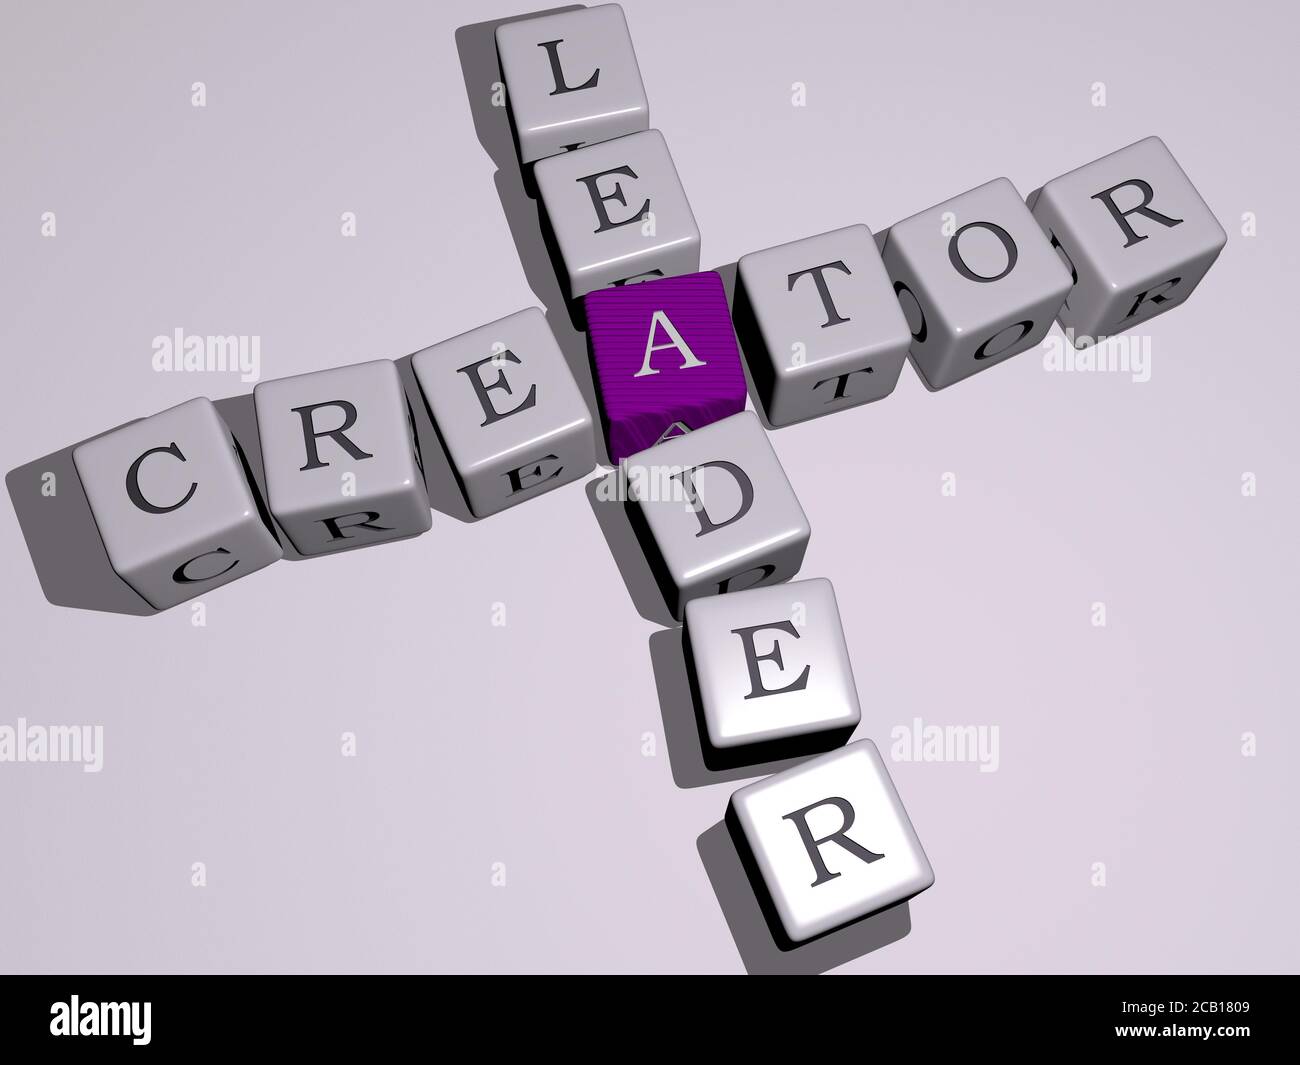 EL LÍDER CREADOR crucigrama con letras cúbicas de dados. Ilustración 3D.  Dibujos animados y artista Fotografía de stock - Alamy